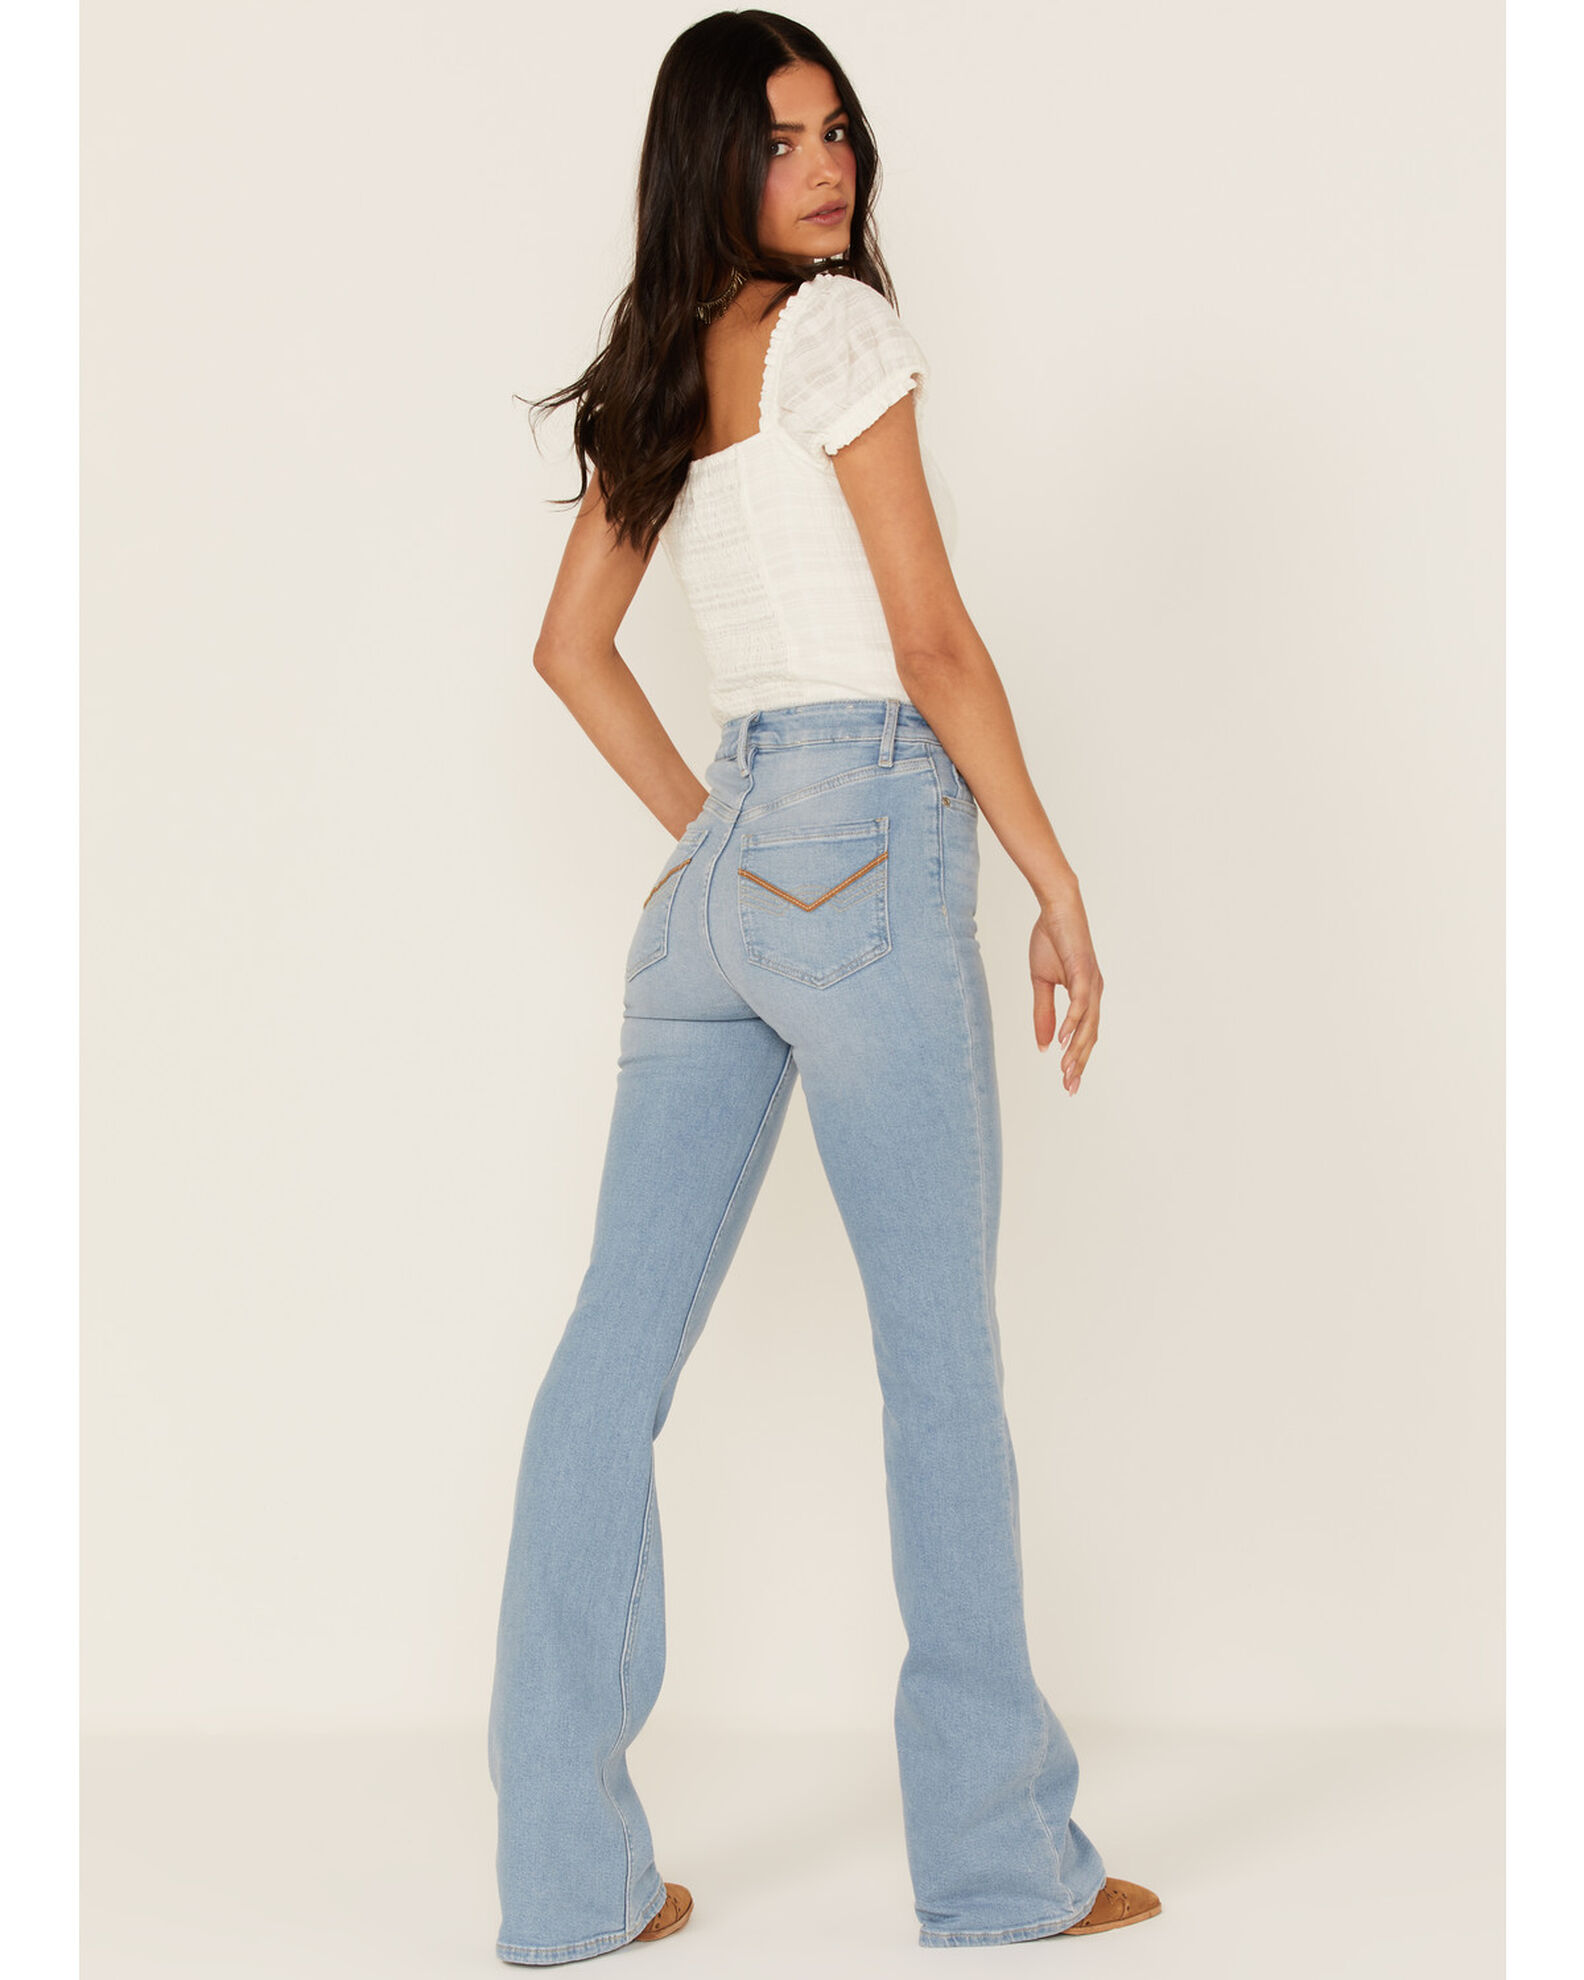 Sheplers Women's Jeans & Bottoms